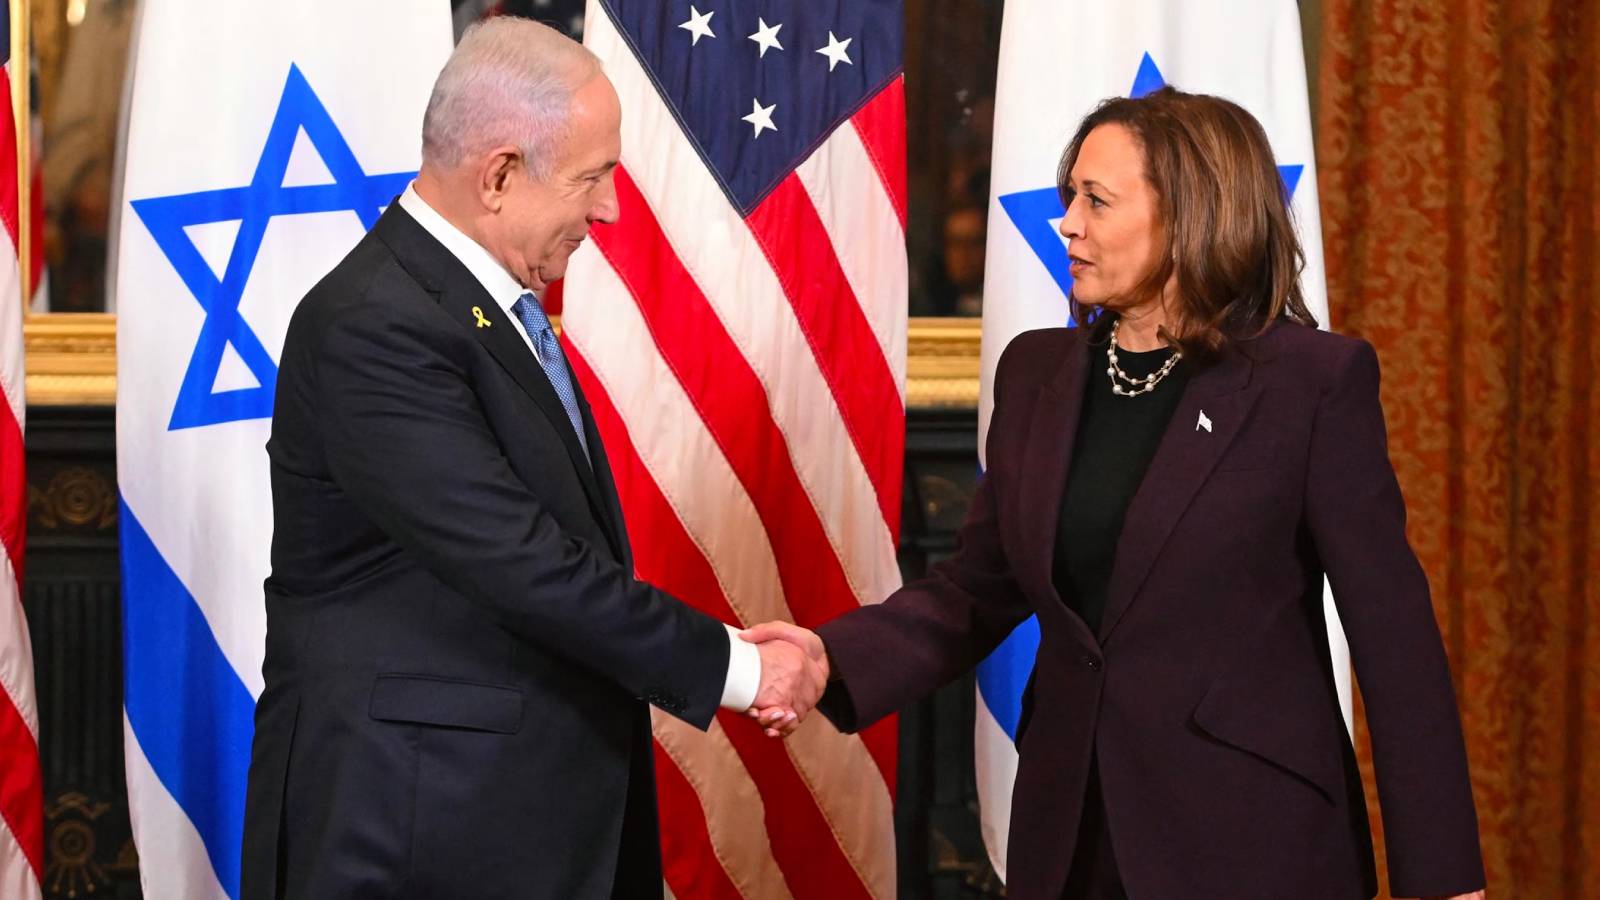 Kamala Harris: Netanyahu’ya Gazze’deki acil insani duruma ilişkin ciddi endişemi ilettim, sessiz kalmayacağım